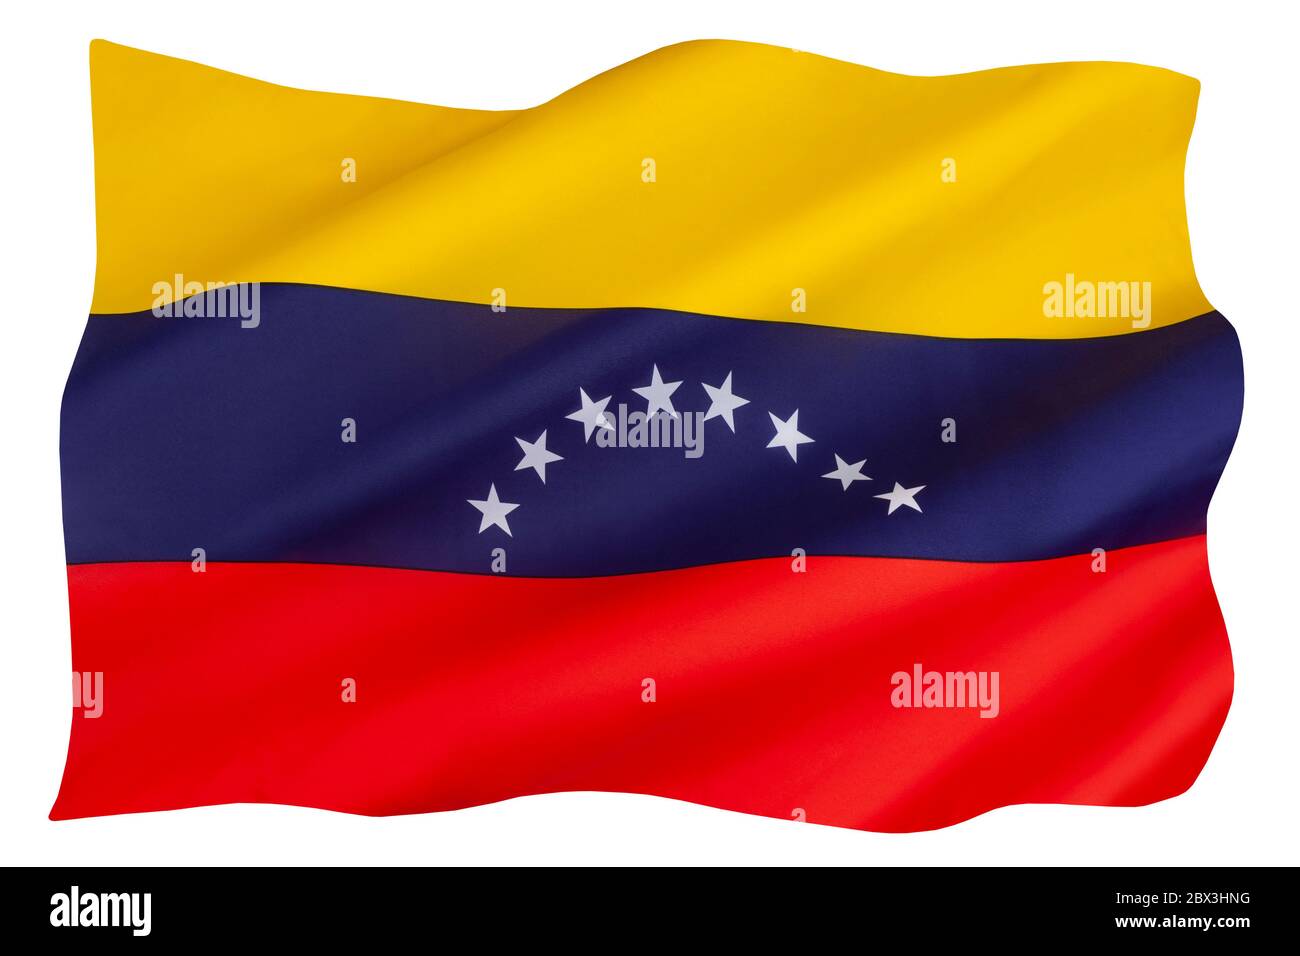 Die aktuellen 8 Sterne auf der Flagge Venezuelas wurden 2006 hinzugefügt. Die grundlegende Dreifarbe von Gelb, Blau und Rot stammt aus der ursprünglichen Flagge, die in eingeführt wurde Stockfoto